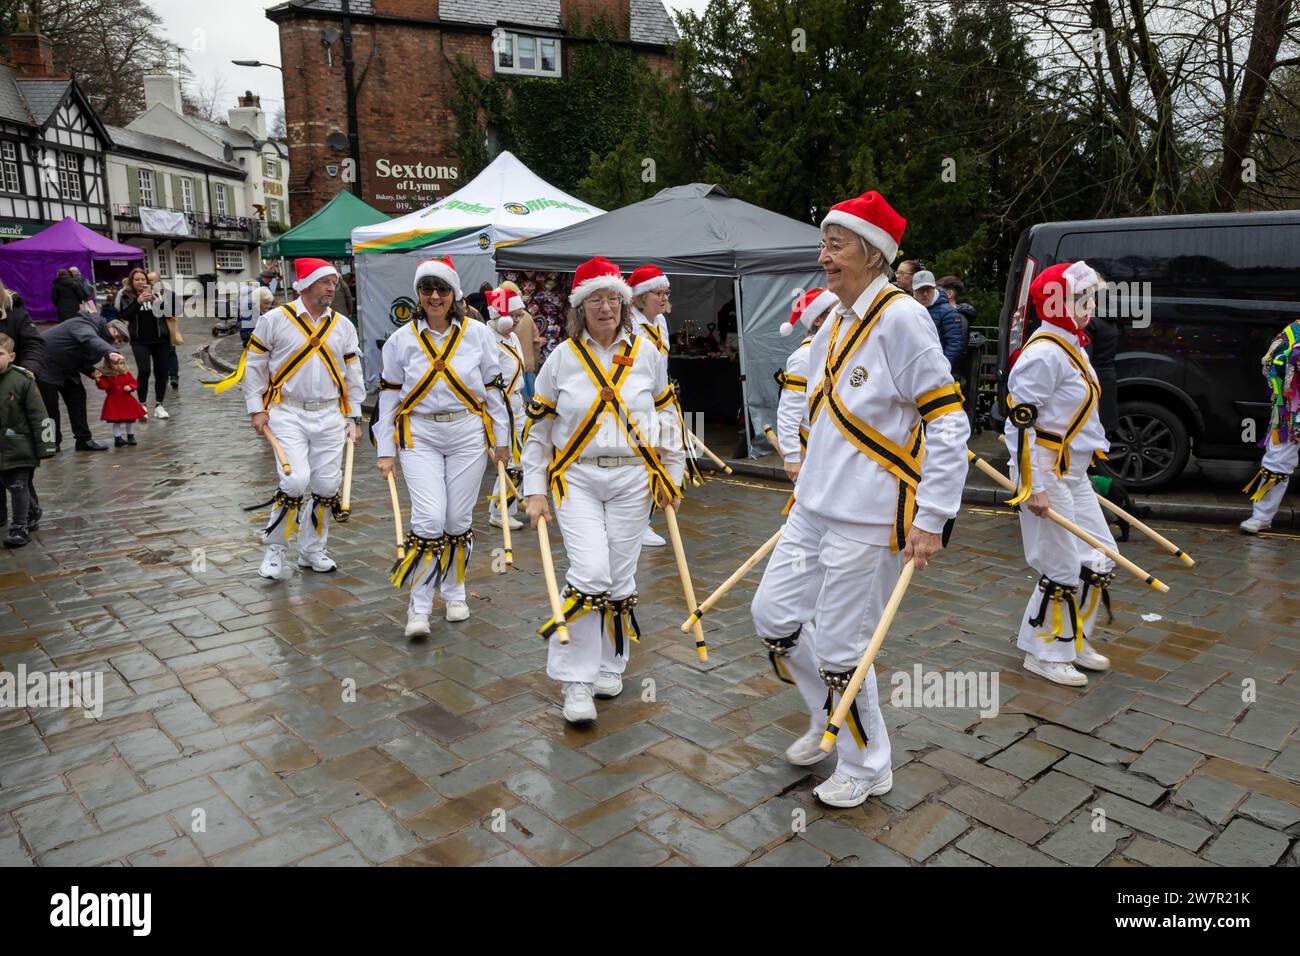 Diversi gruppi di Morris Dancers si sono esibiti nelle strade di Lymm, Cheshire, in Inghilterra, al loro annuale Dickensian Festival Foto Stock